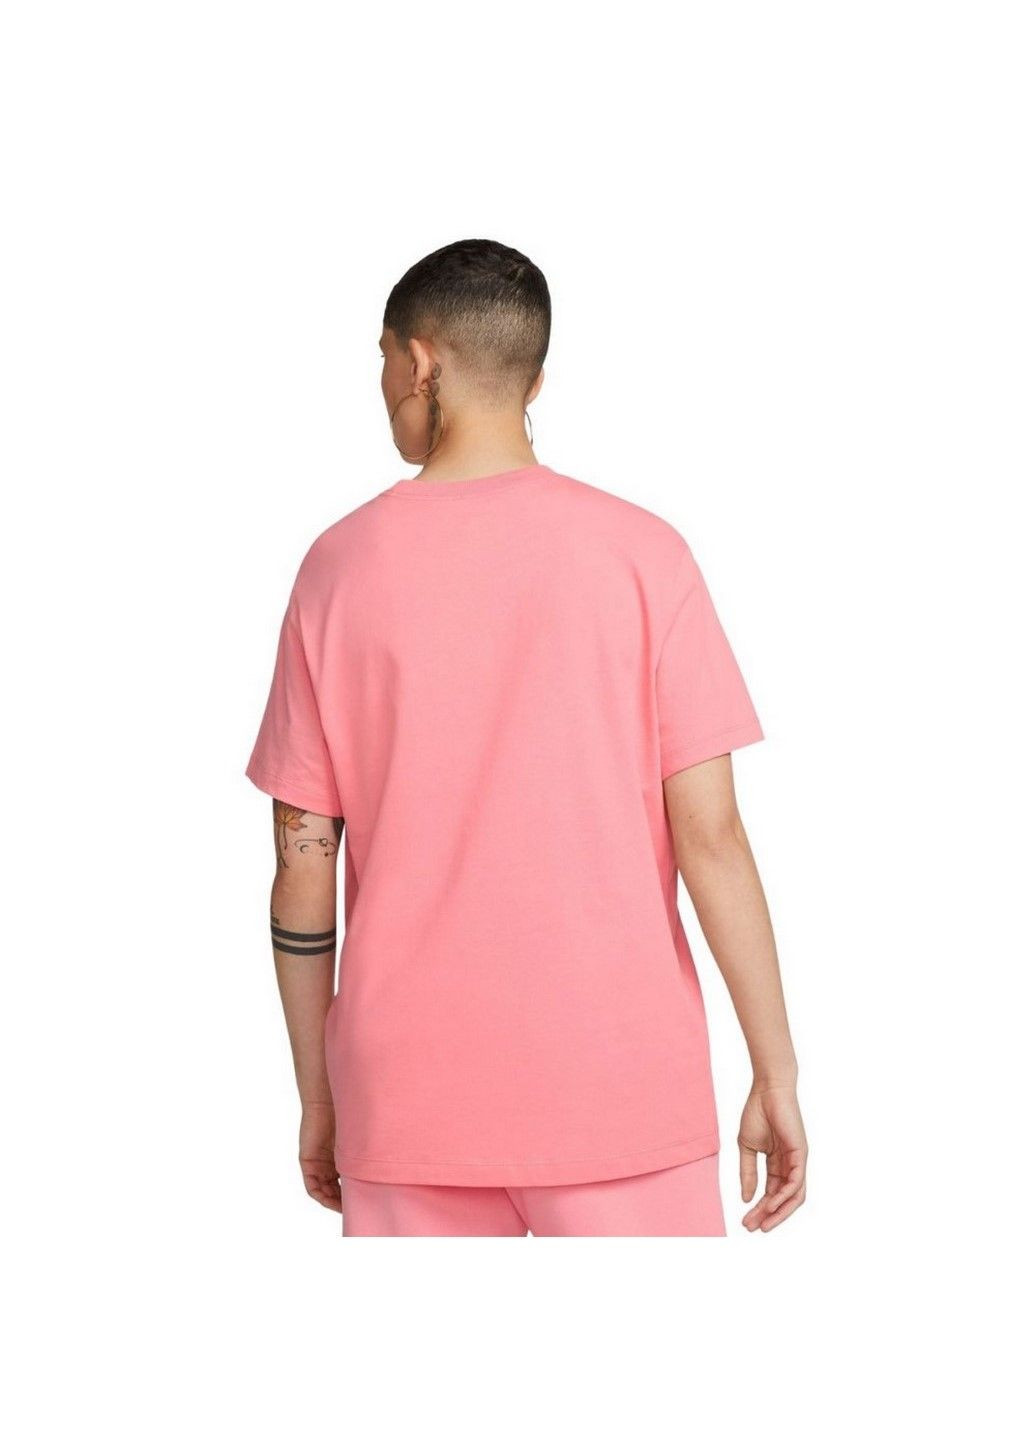 Розовая летняя футболка w nsw tee oc 2 bf fb8203-611 Nike